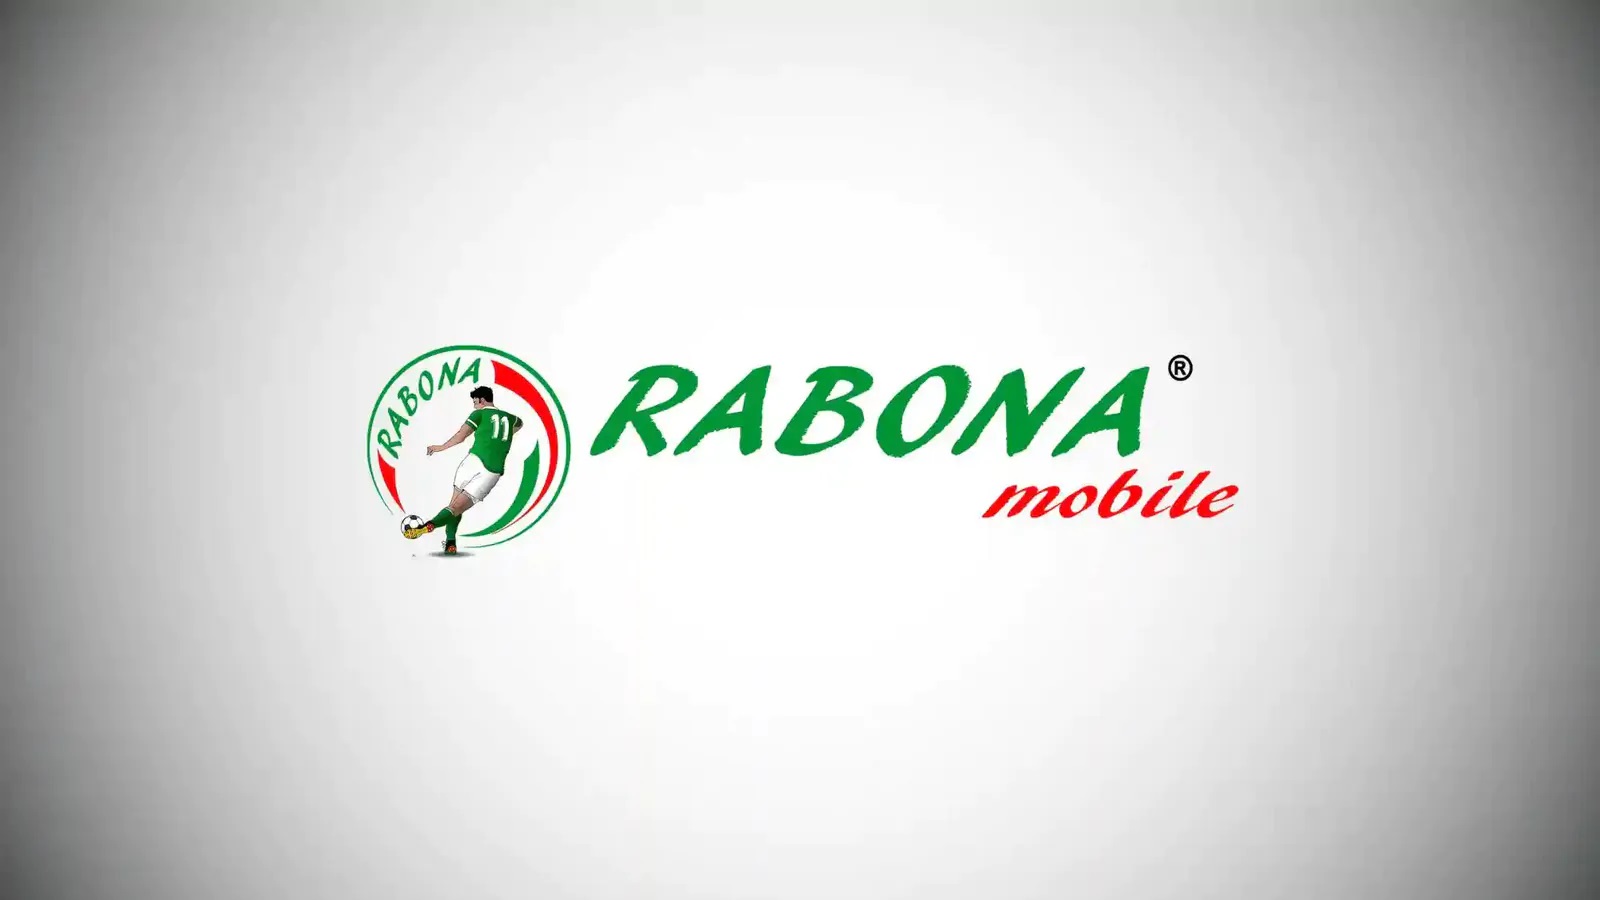 Rabona Mobile entra in una nuova era con le eSIM